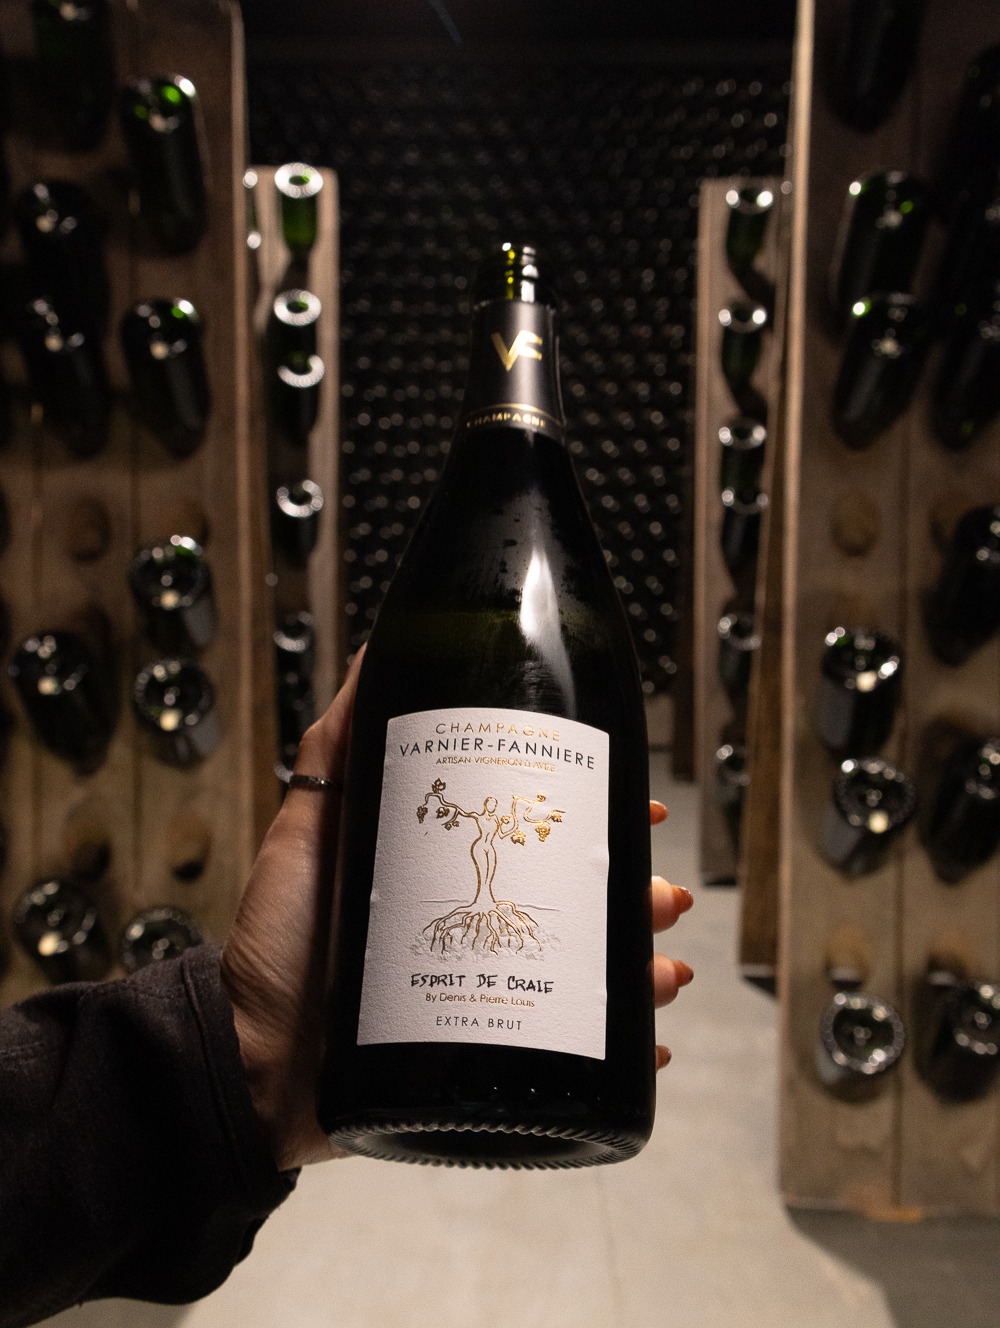 Champagne Varnier-Fanniere Esprit de Craie Extra Brut NV